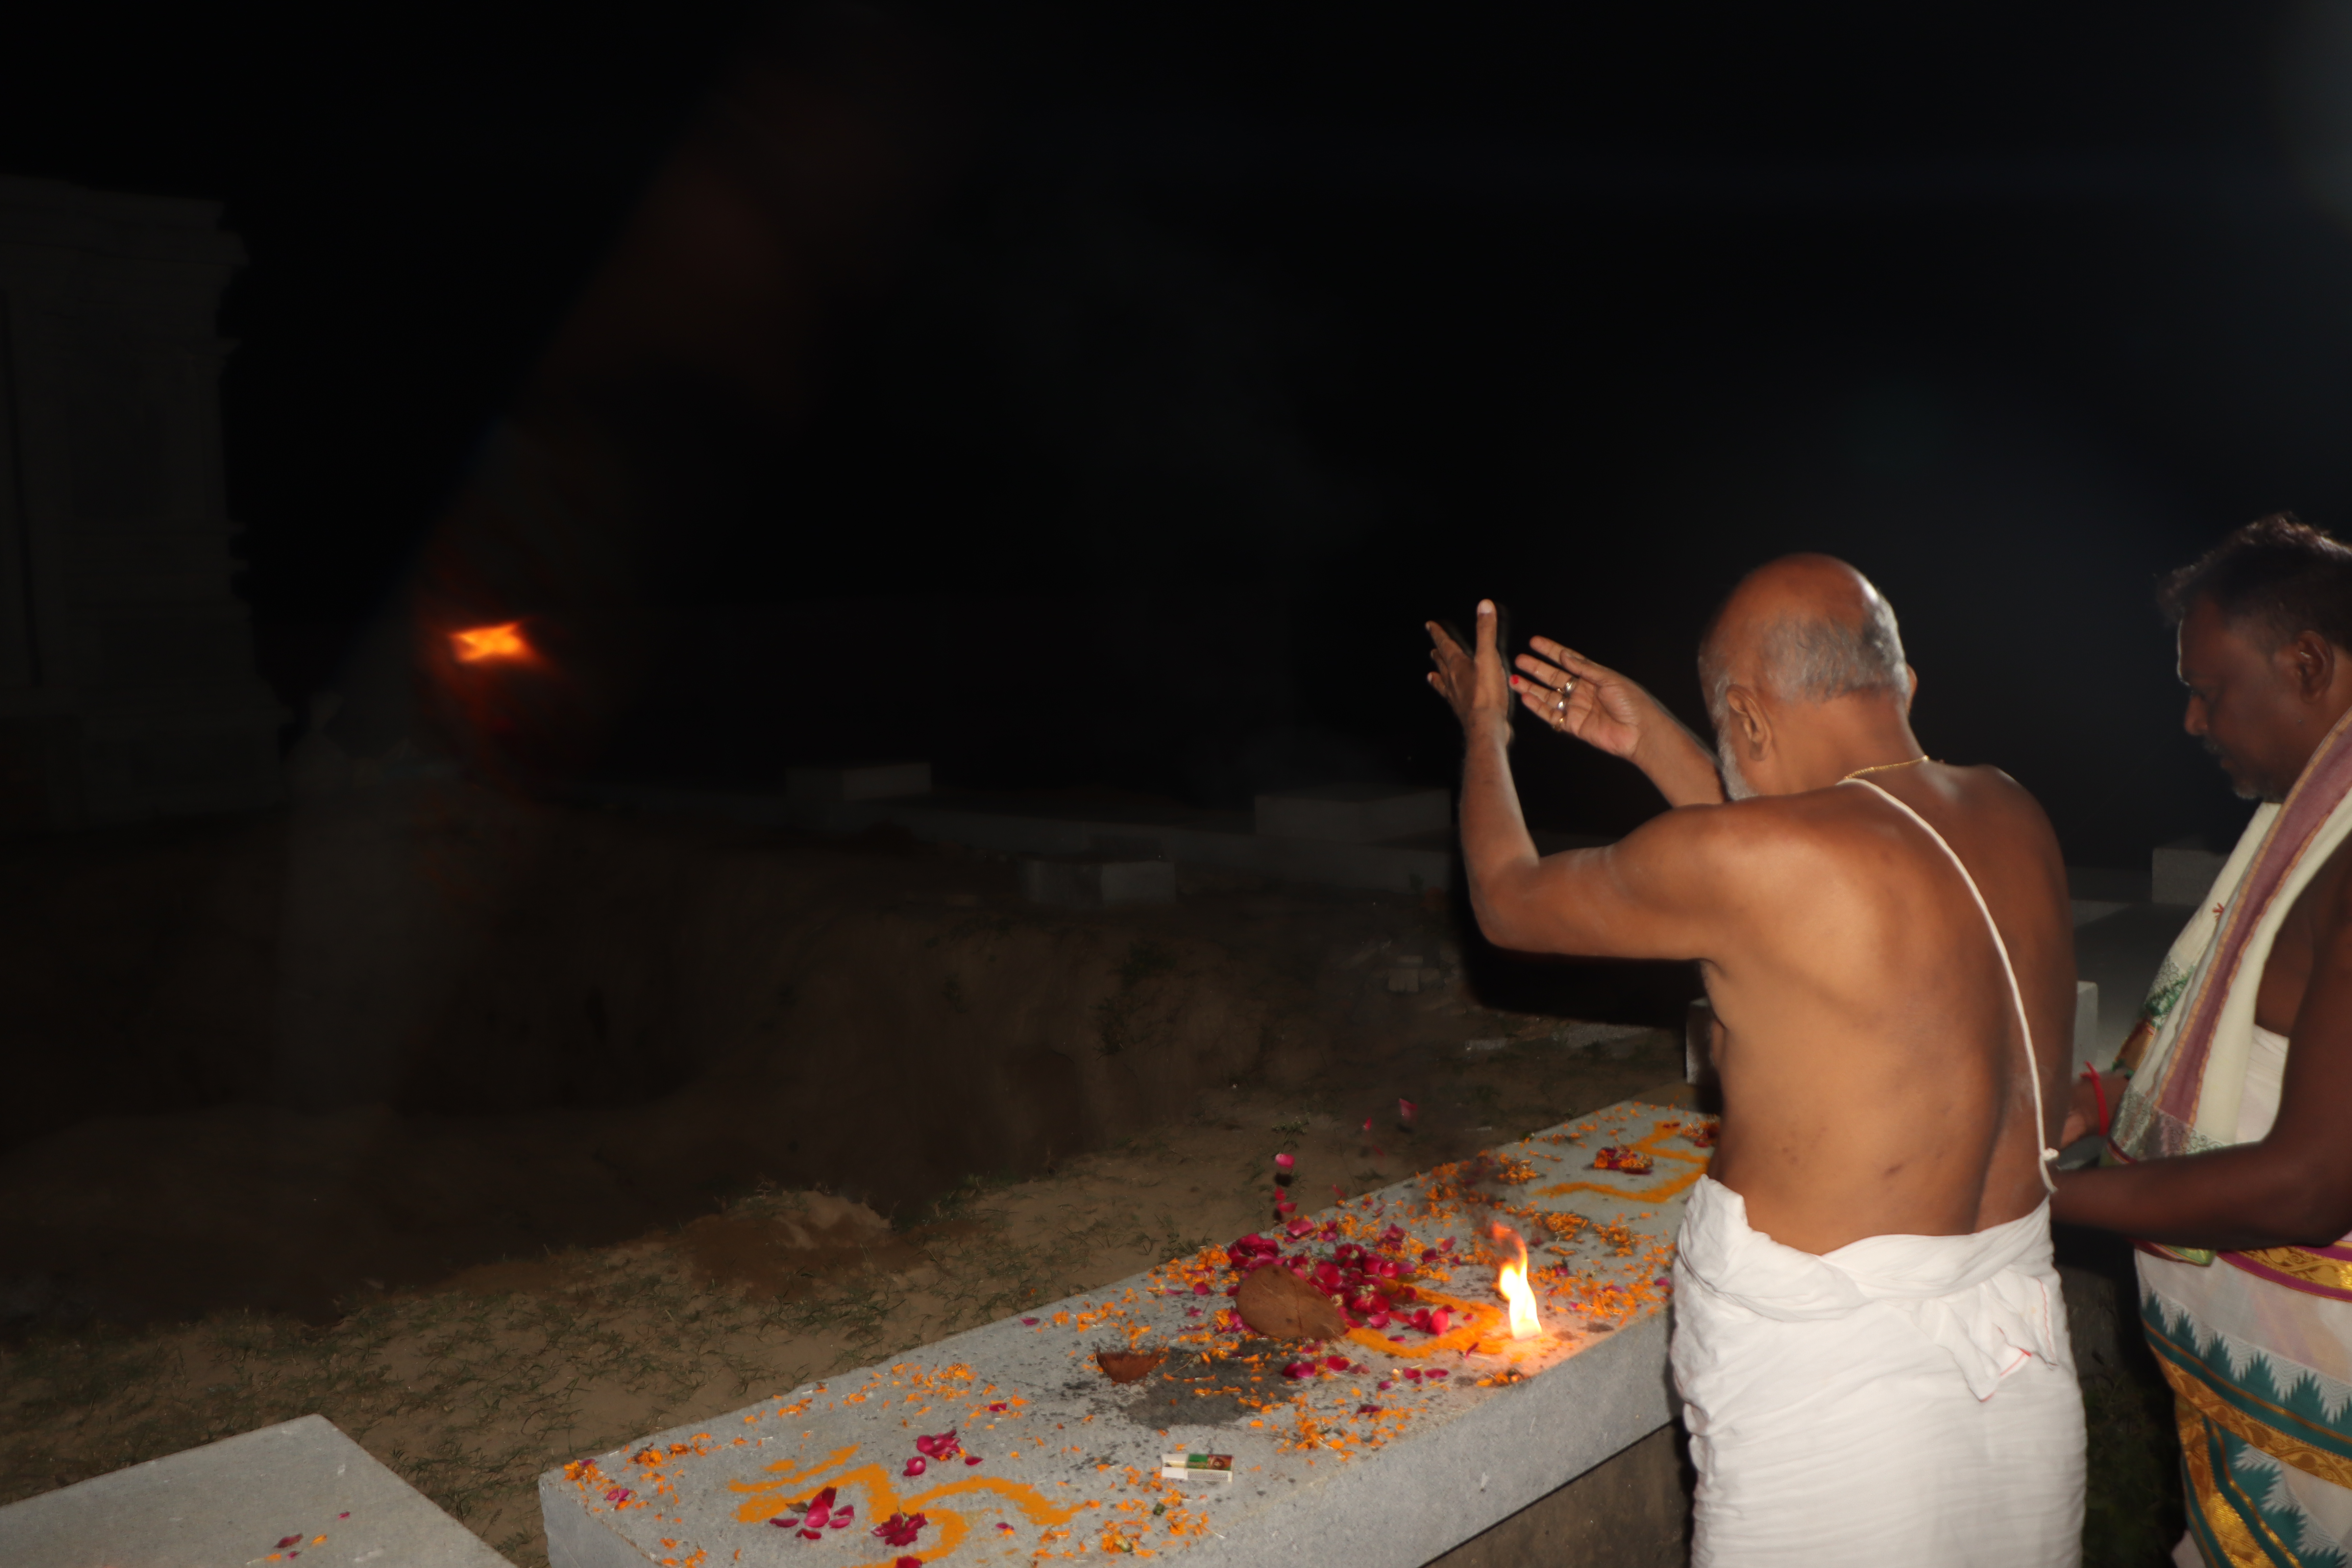 Shankaracharya visit Satyanarayana Mandir